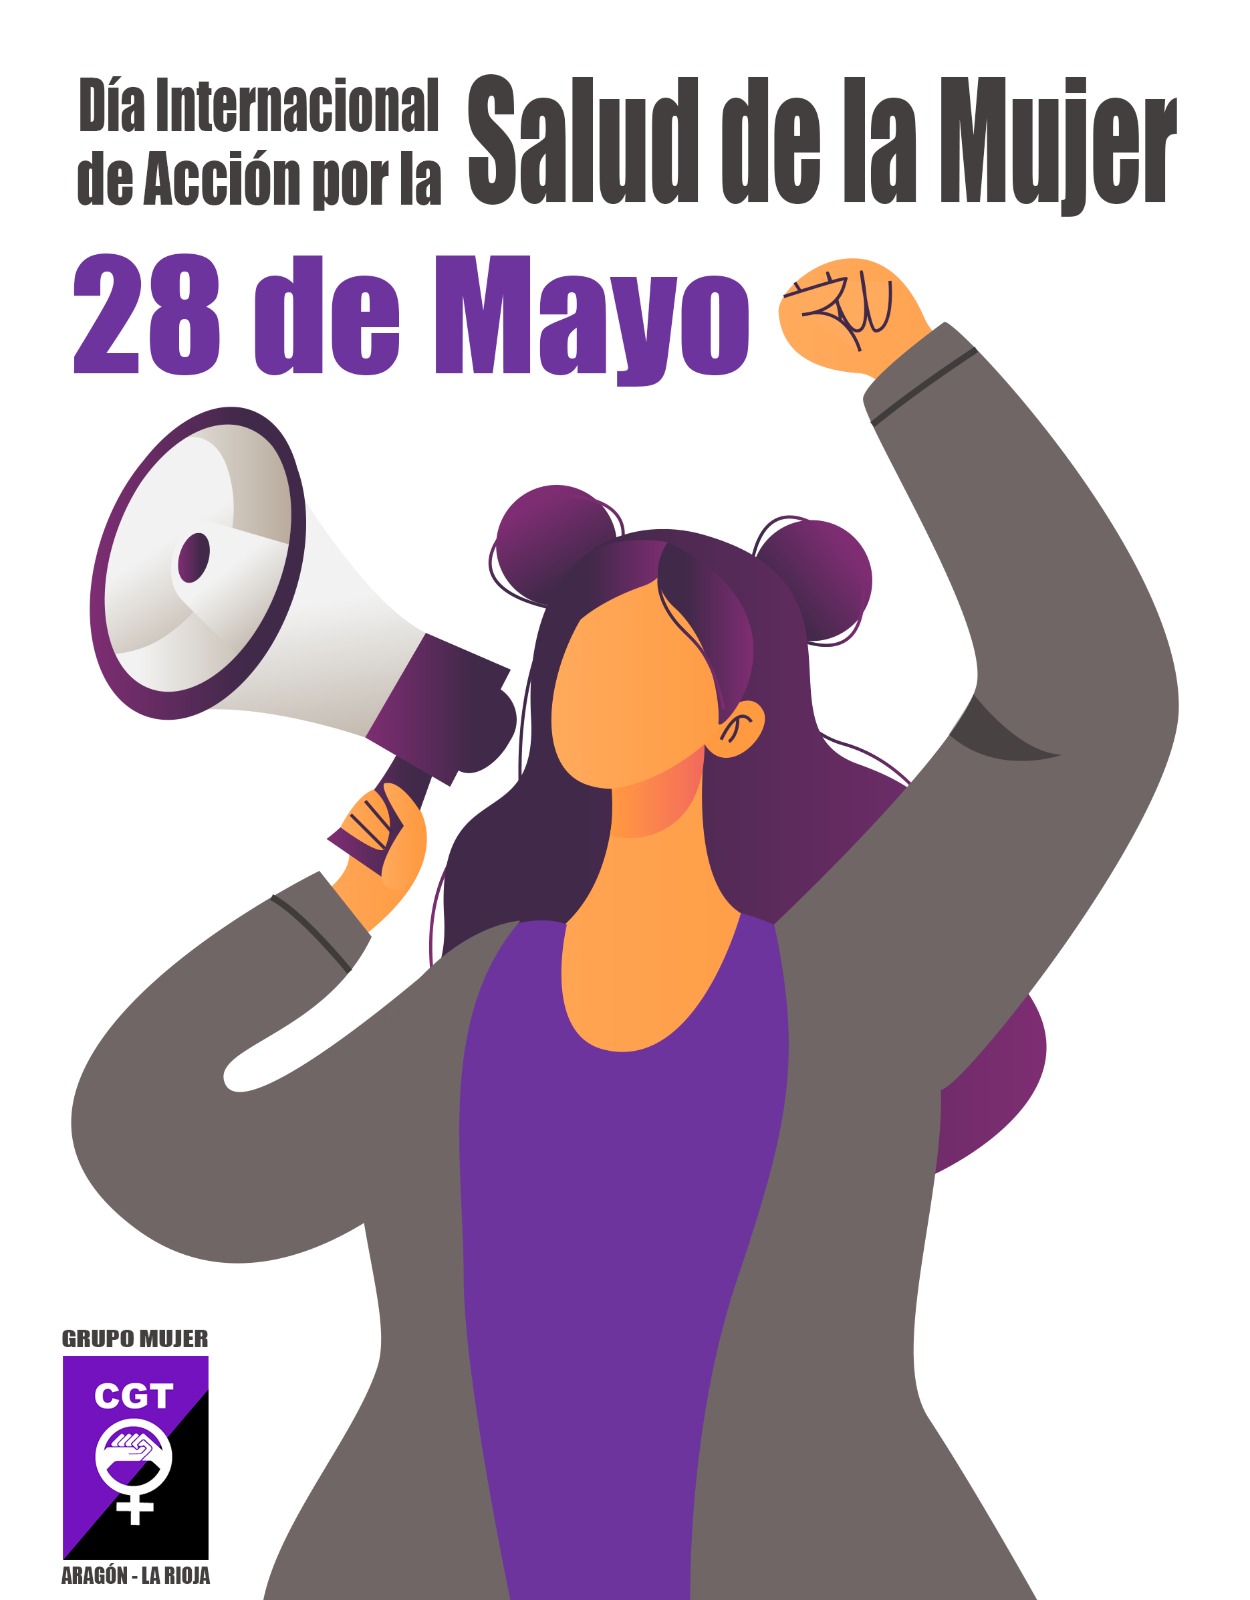 28 de mayo, Día Internacional de Acción por la Salud de las Mujeres